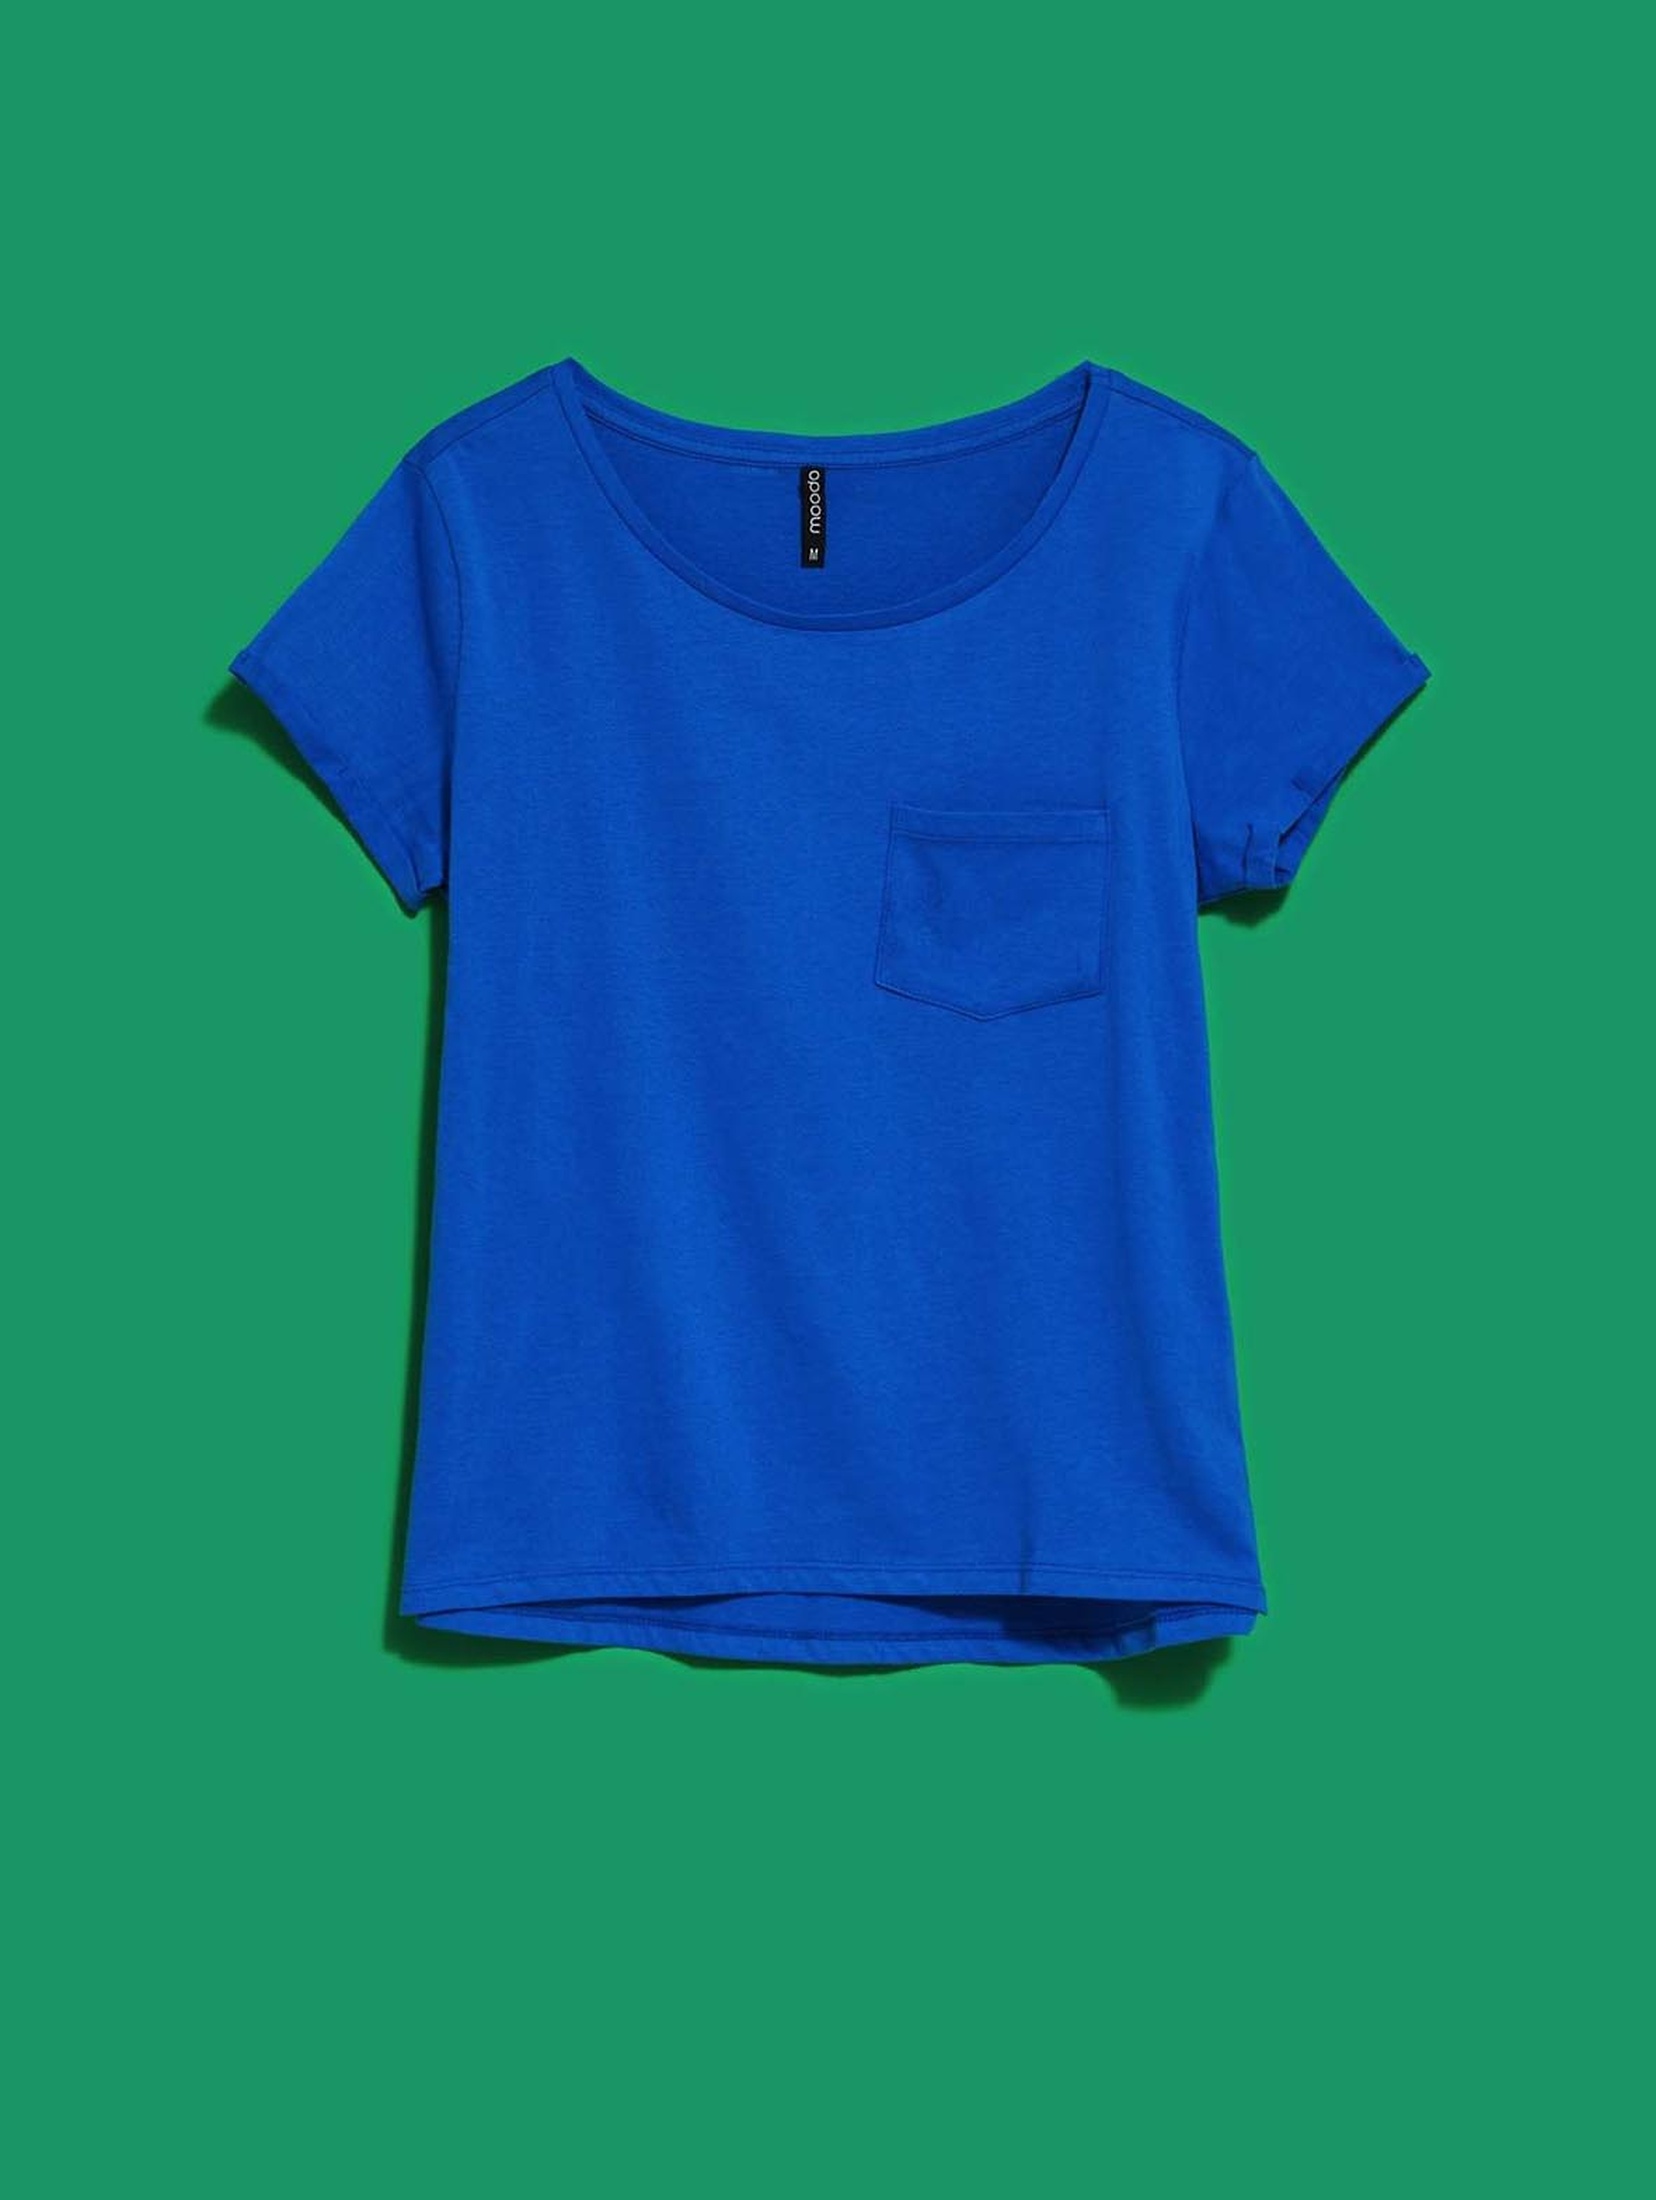 Bawełniany niebieski t-shirt damski z kieszonką